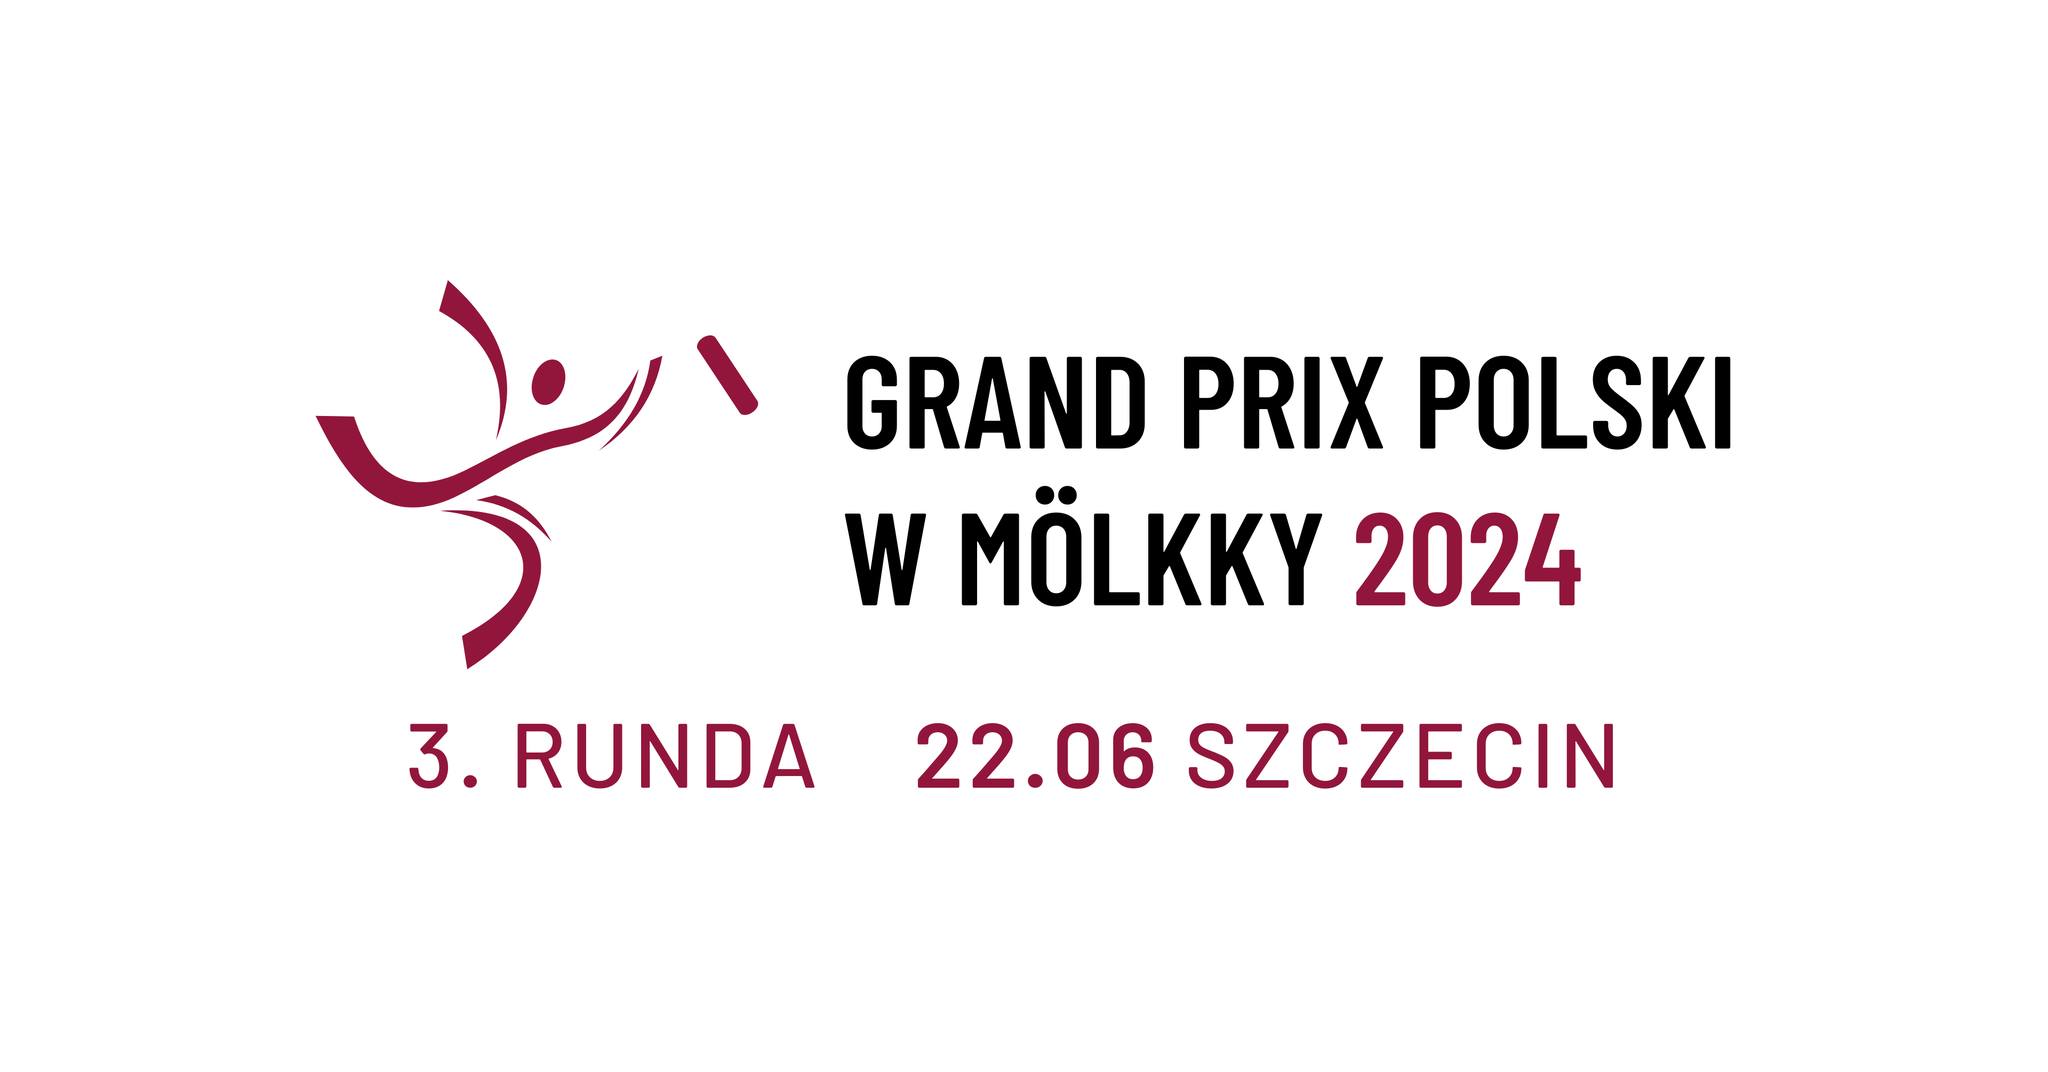 Grand Prix of Poland - event 3/5